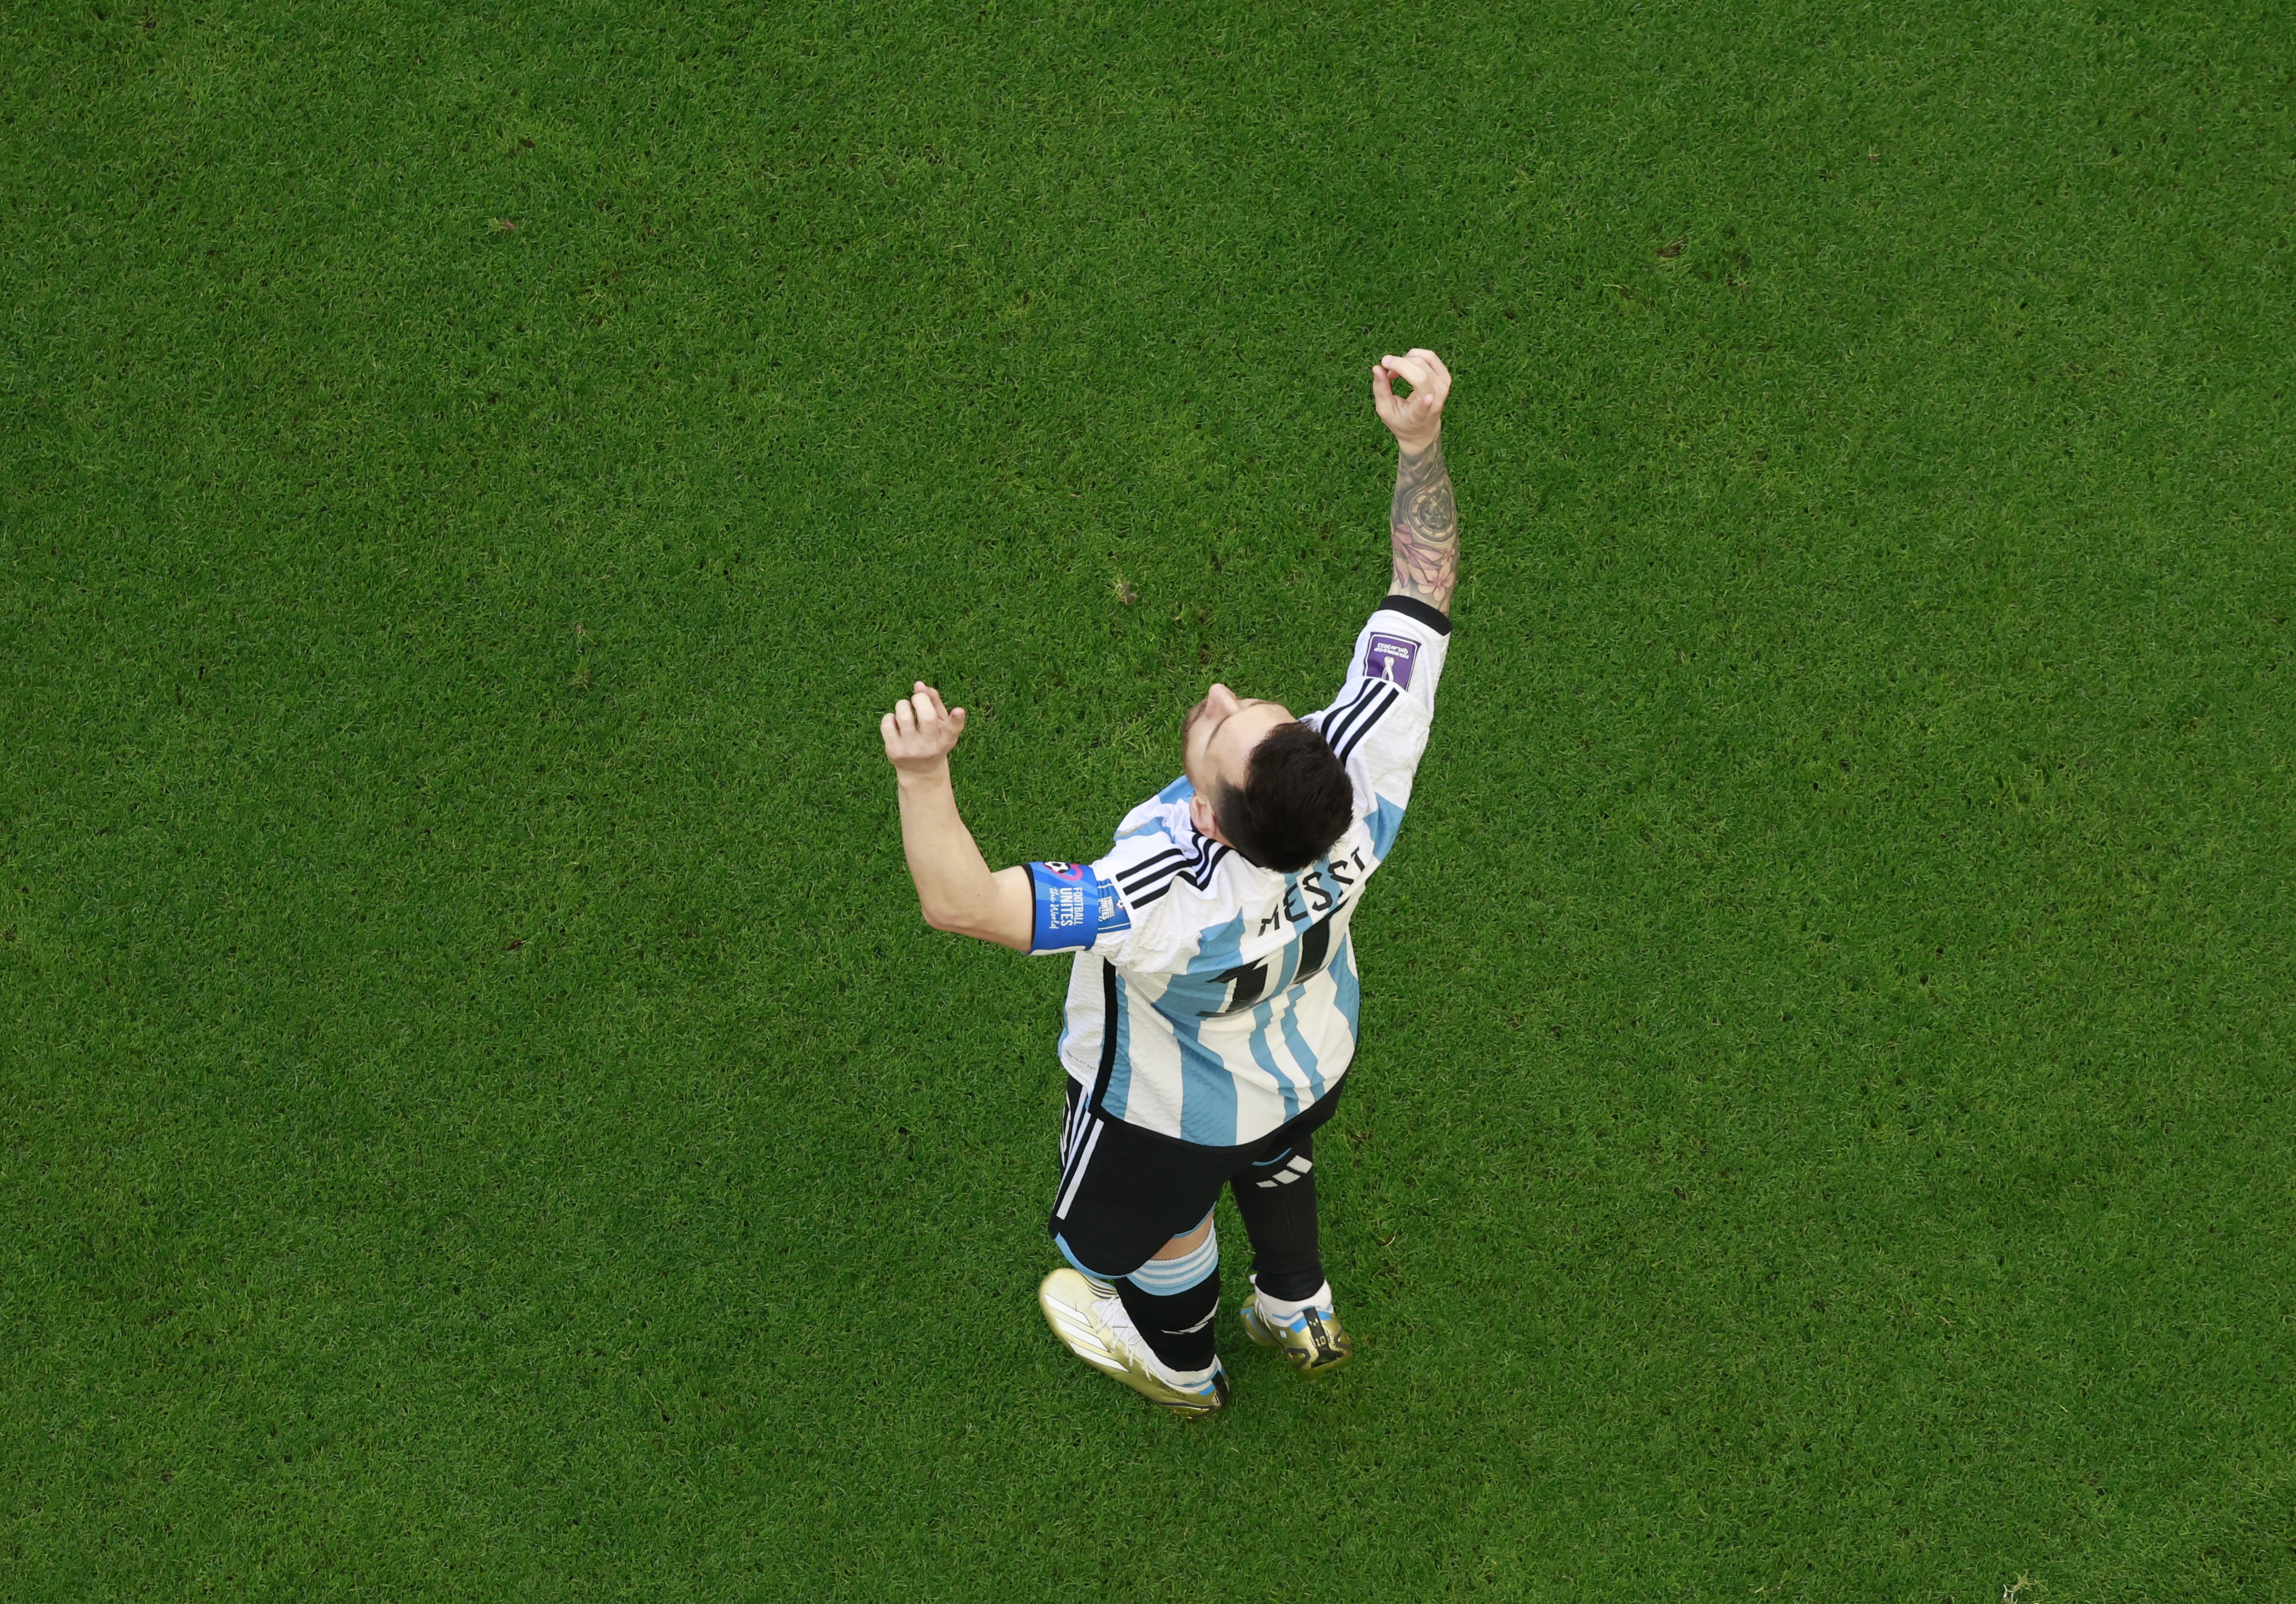 Después del gol, Messi mira al cielo y agradece (REUTERS/Peter Cziborra)